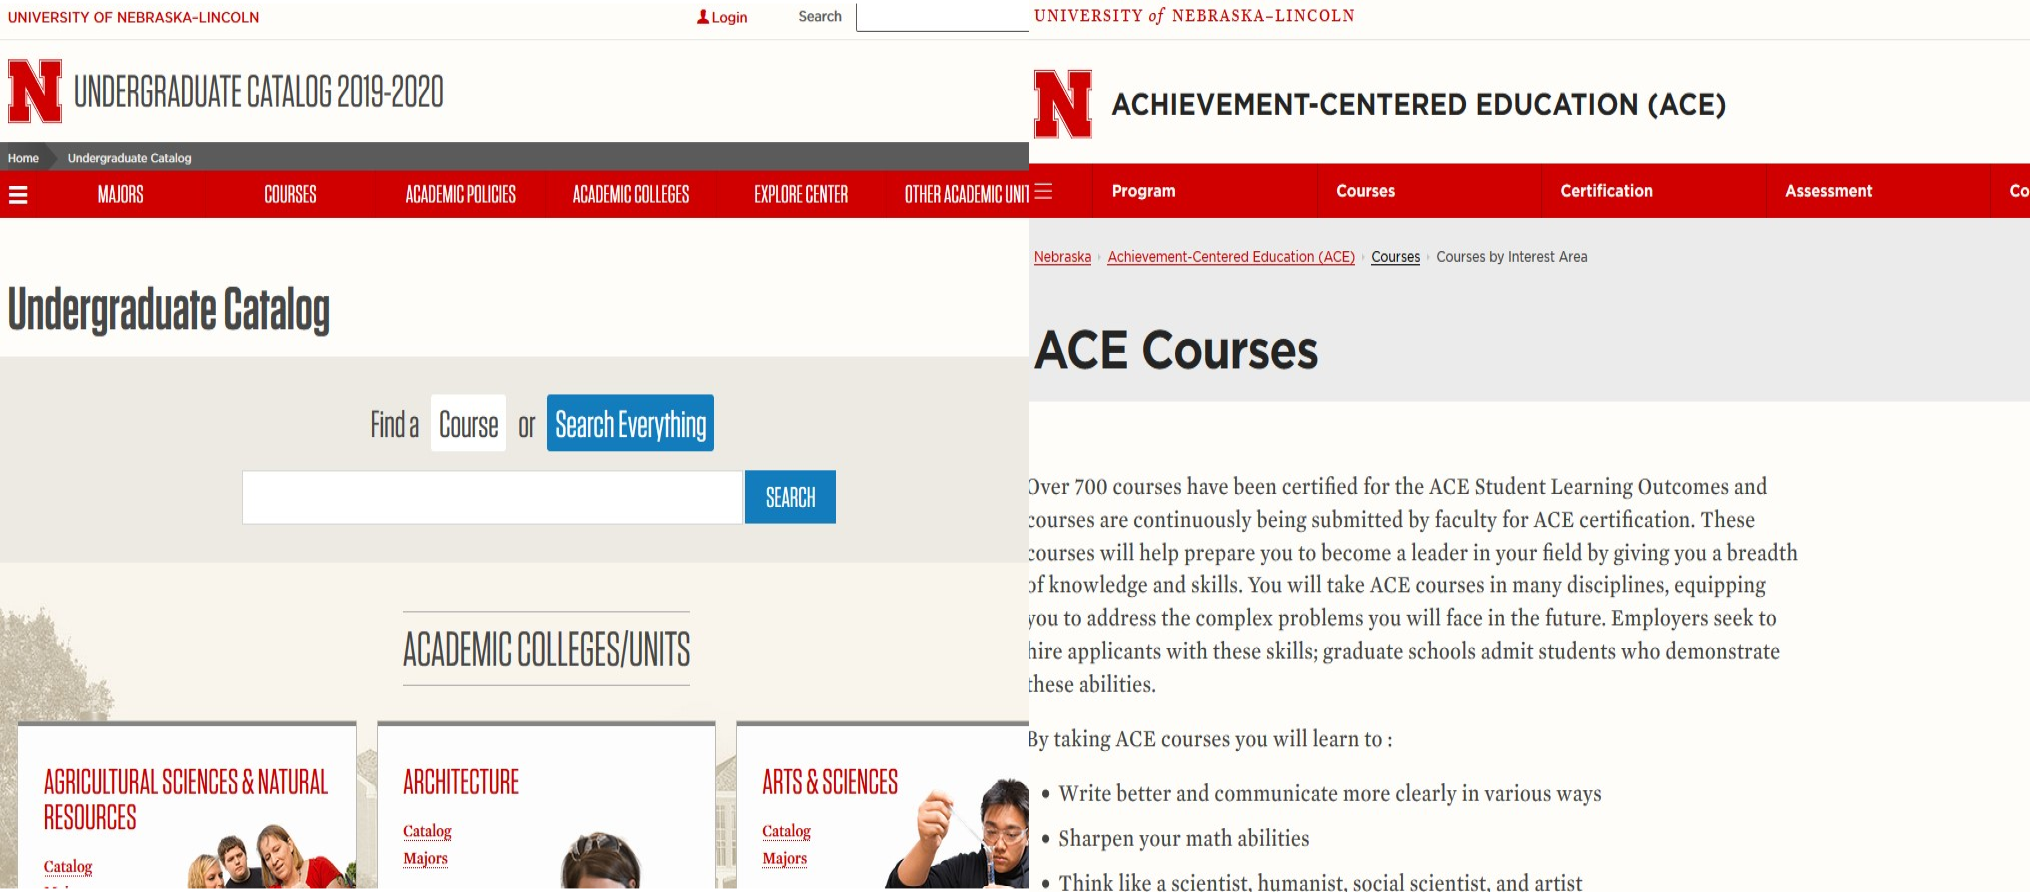 The Undergraduate Catalog & ACE Courses